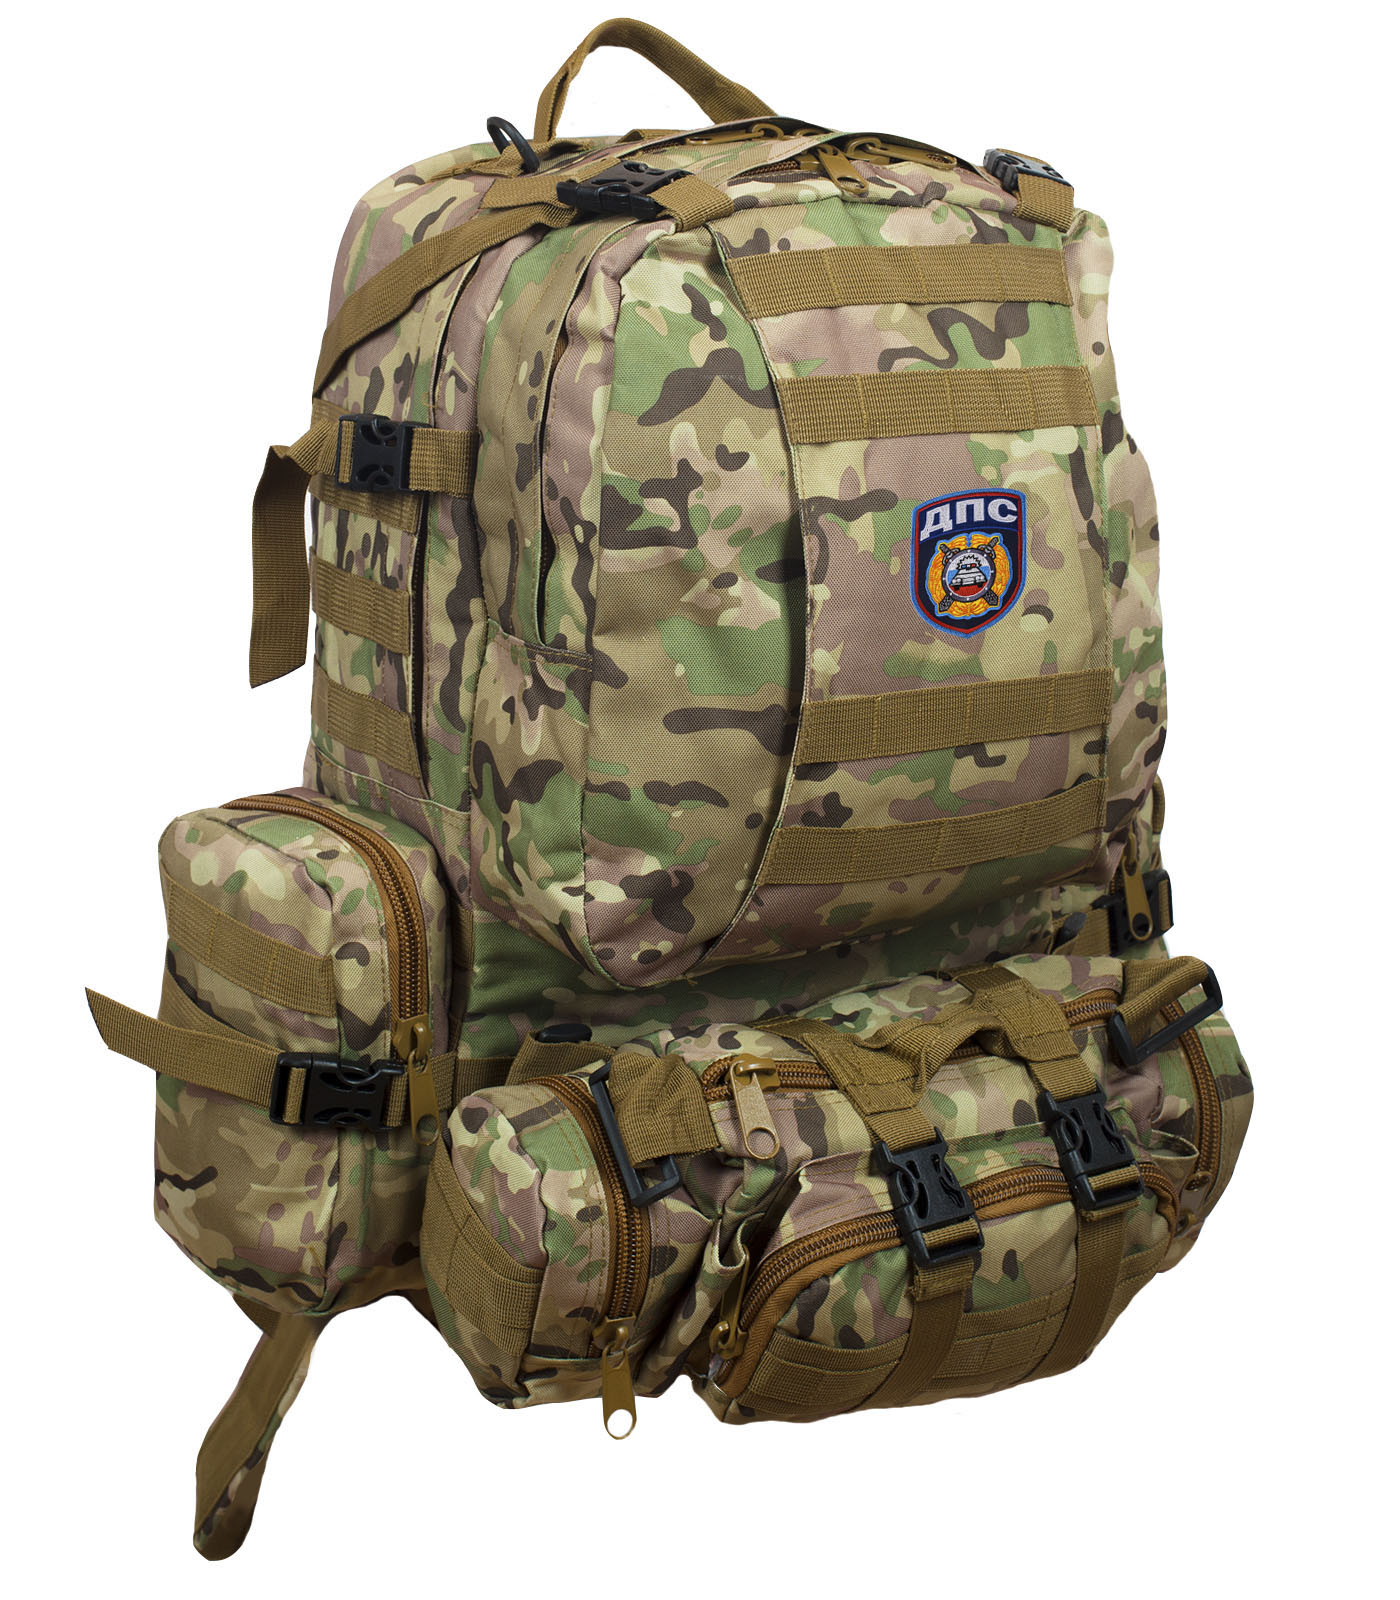 Функциональный армейский рюкзак с нашивкой ДПС 